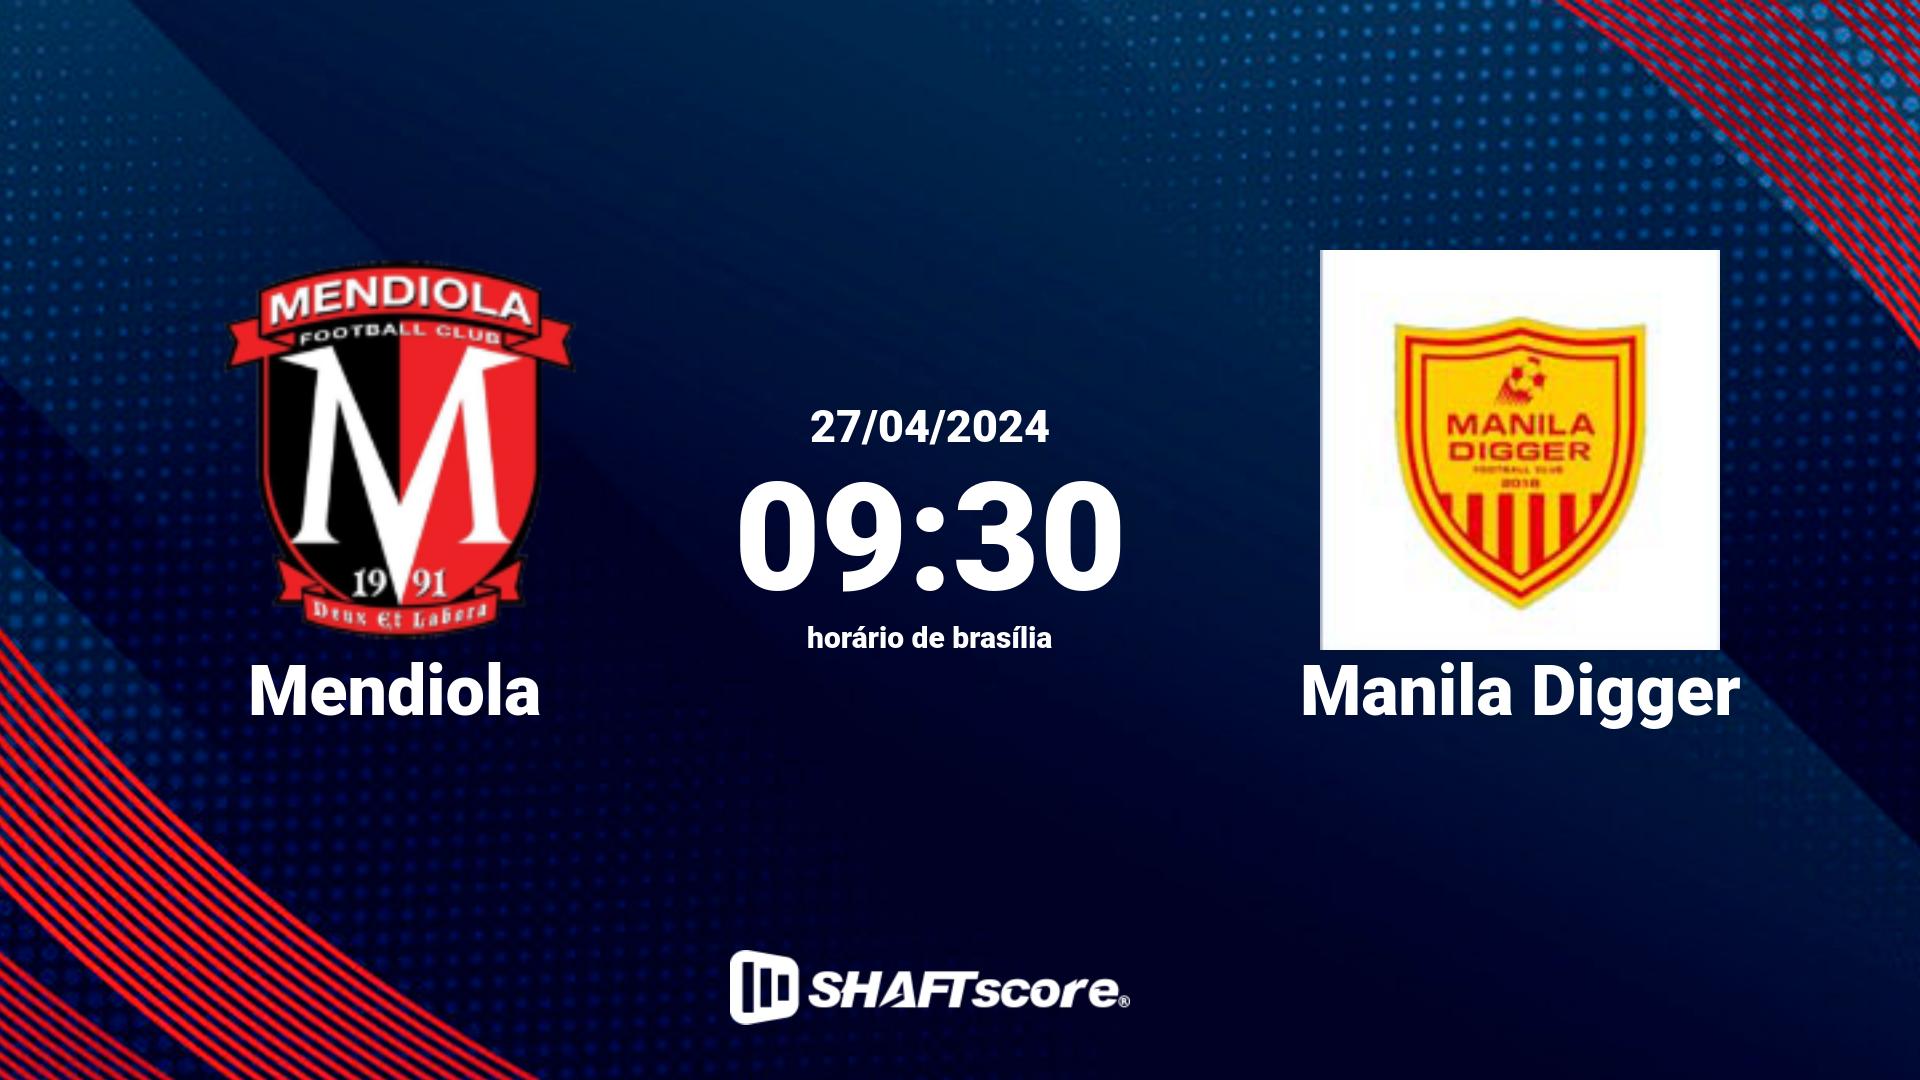 Estatísticas do jogo Mendiola vs Manila Digger 27.04 09:30